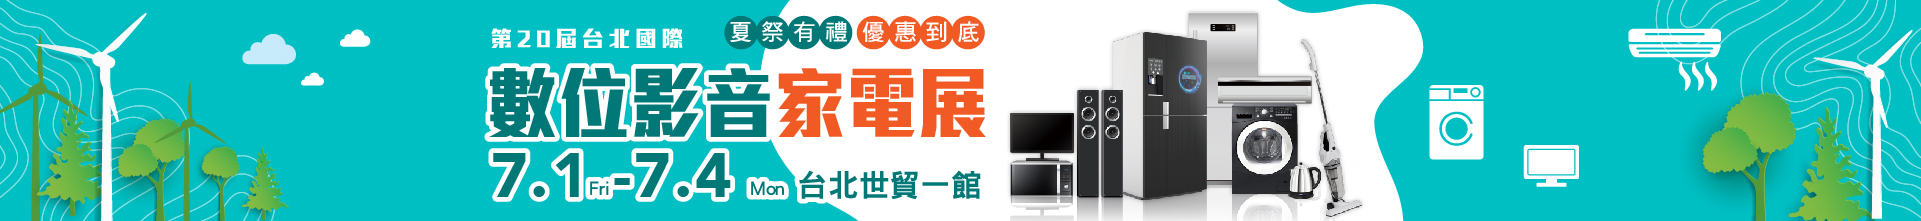 第20屆台北國際數位影音家電展